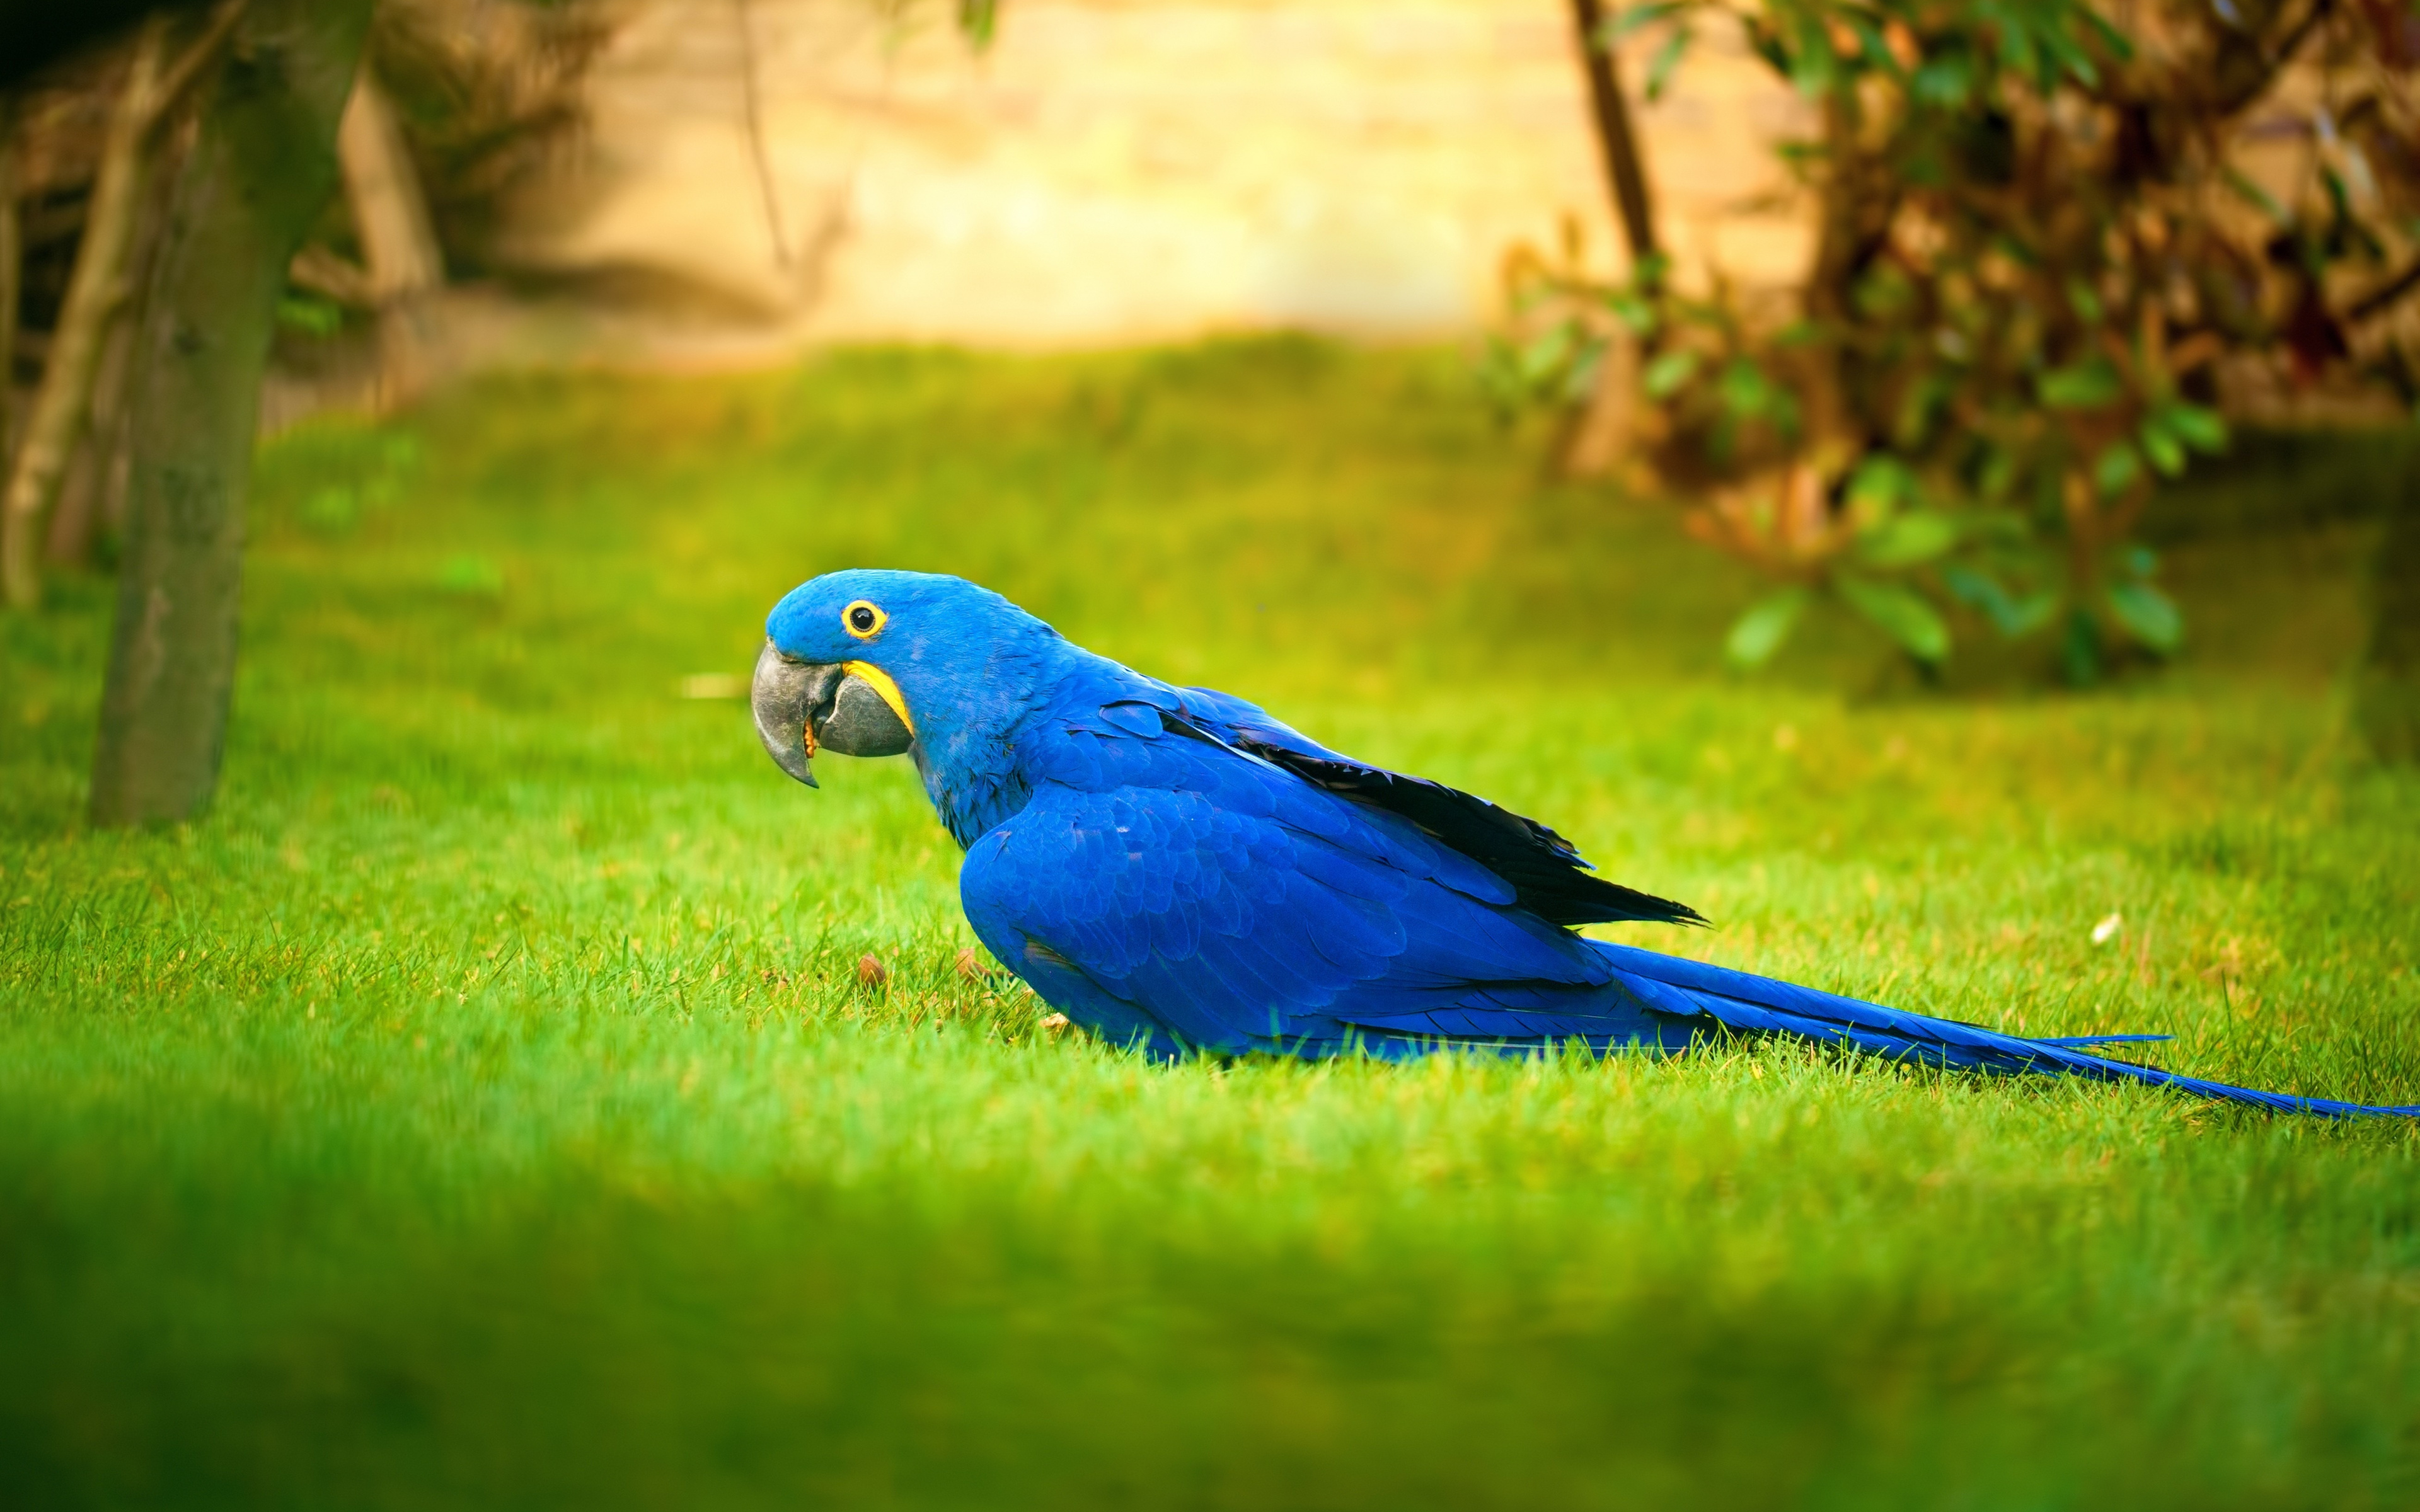 Macaw, Bird, Grass, Parrot, Wallpaper - HD Wallpaper 